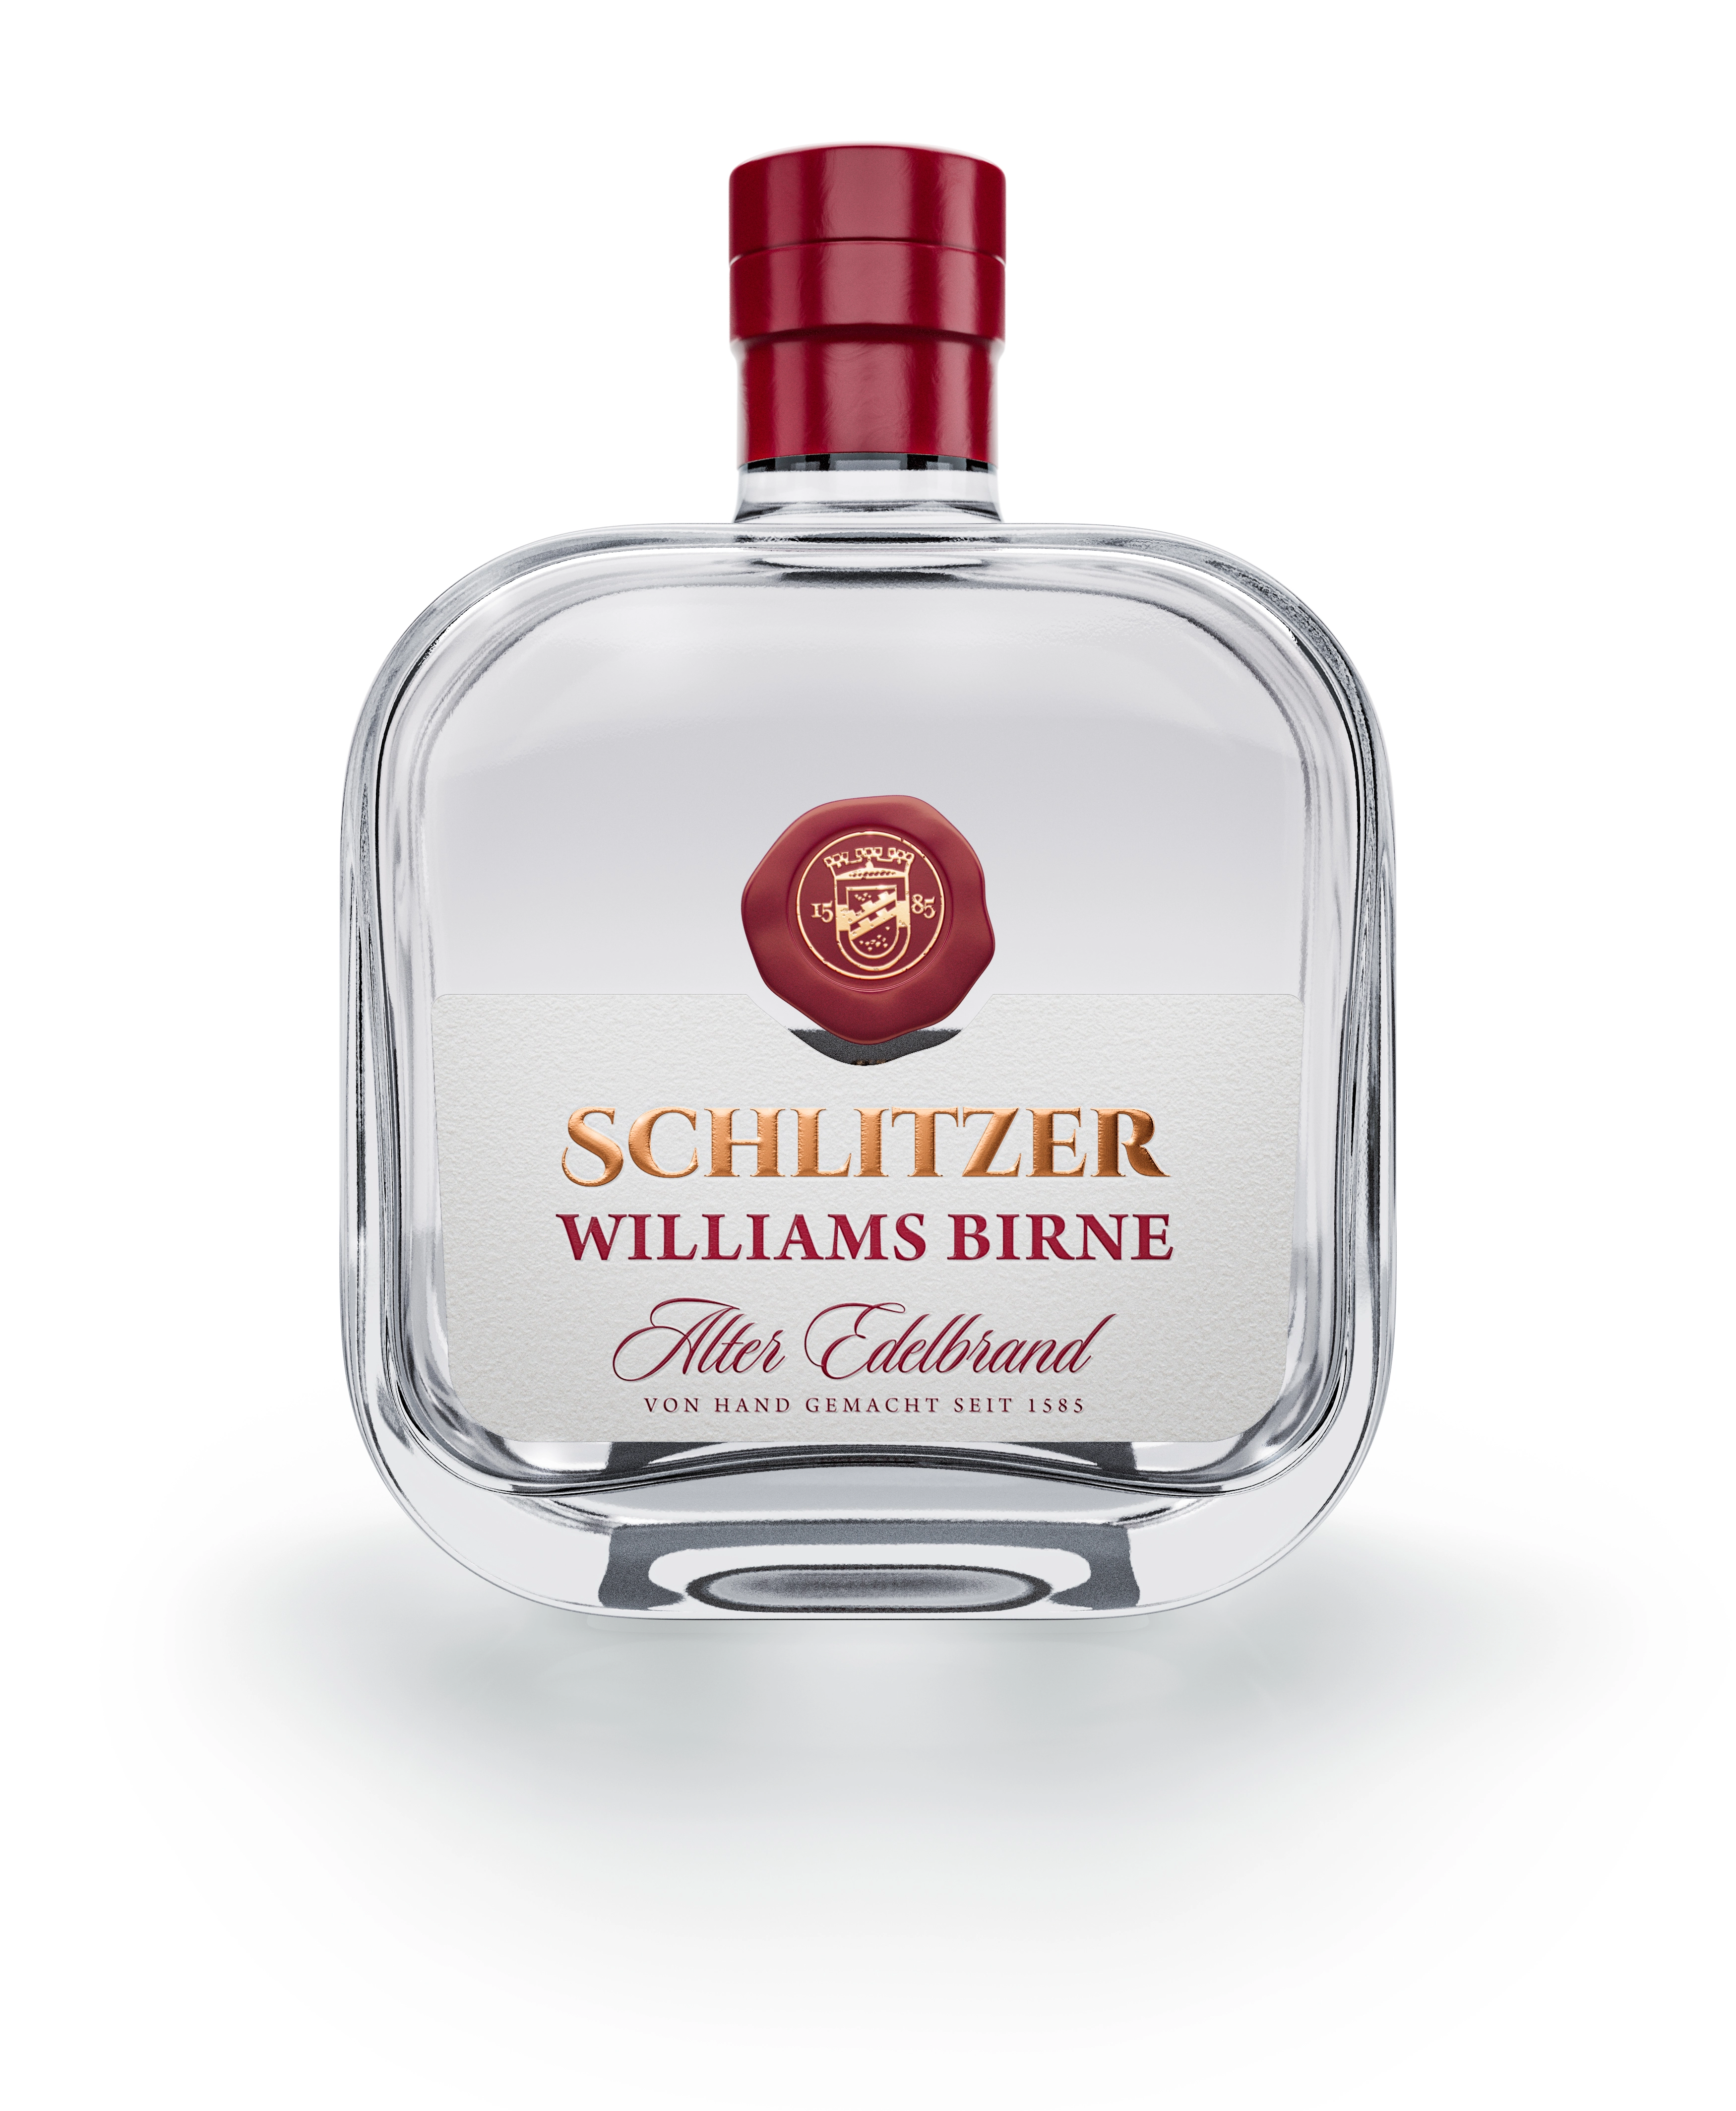 Williams Birne Edelbrand 45%vol. 0,5 Liter in einer quadratischen Flaschenform mit dem passenden Etikett und Siegel